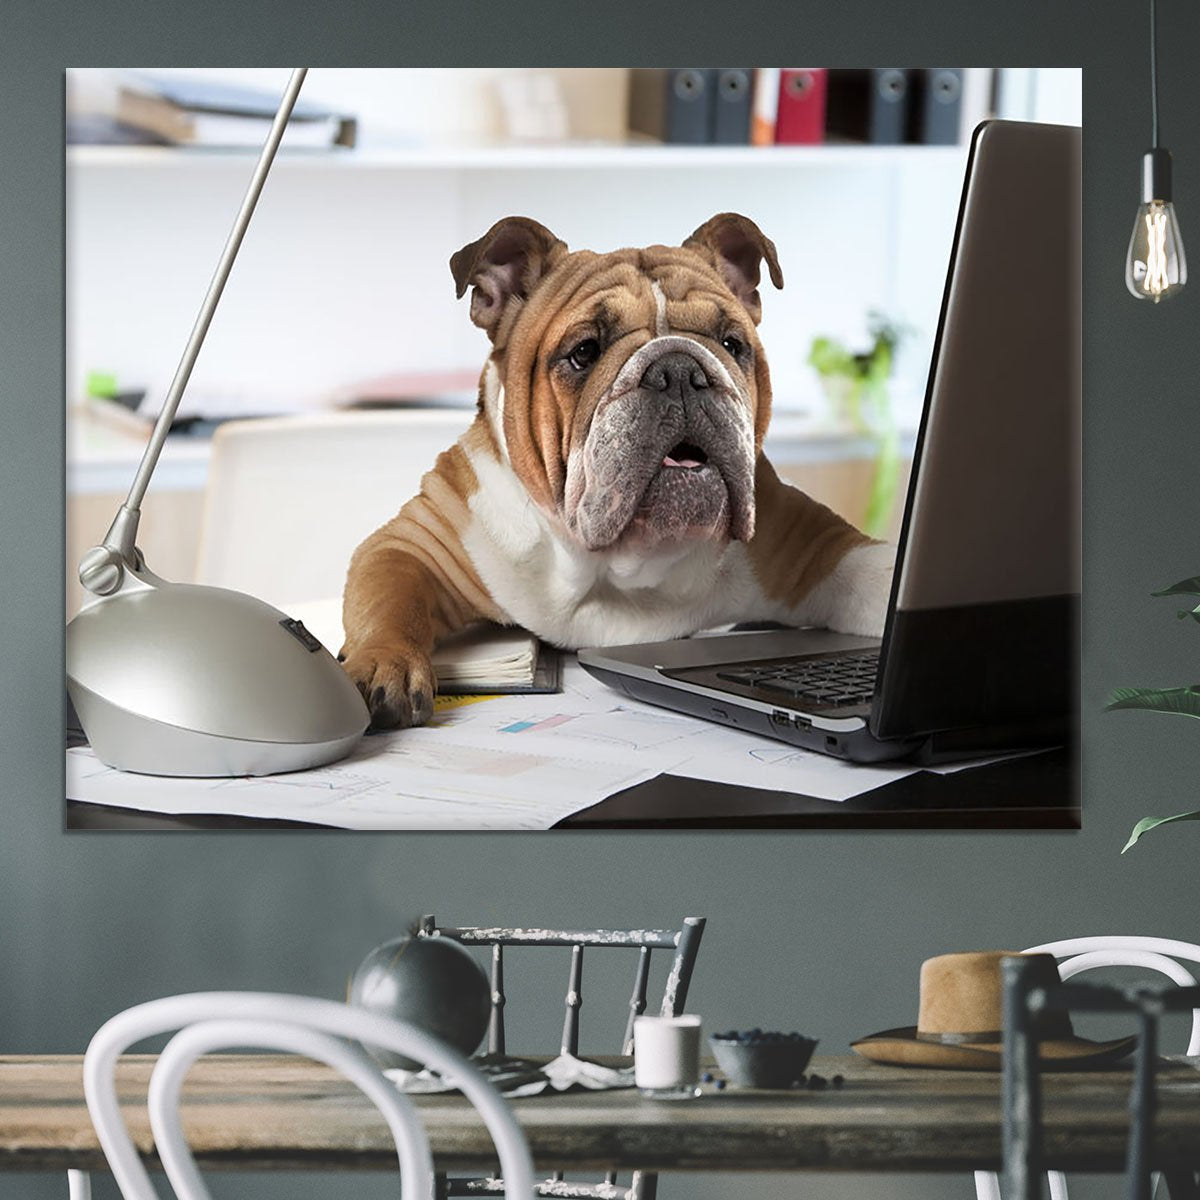 English Bulldog sitting at a desk Canvas Print or Poster